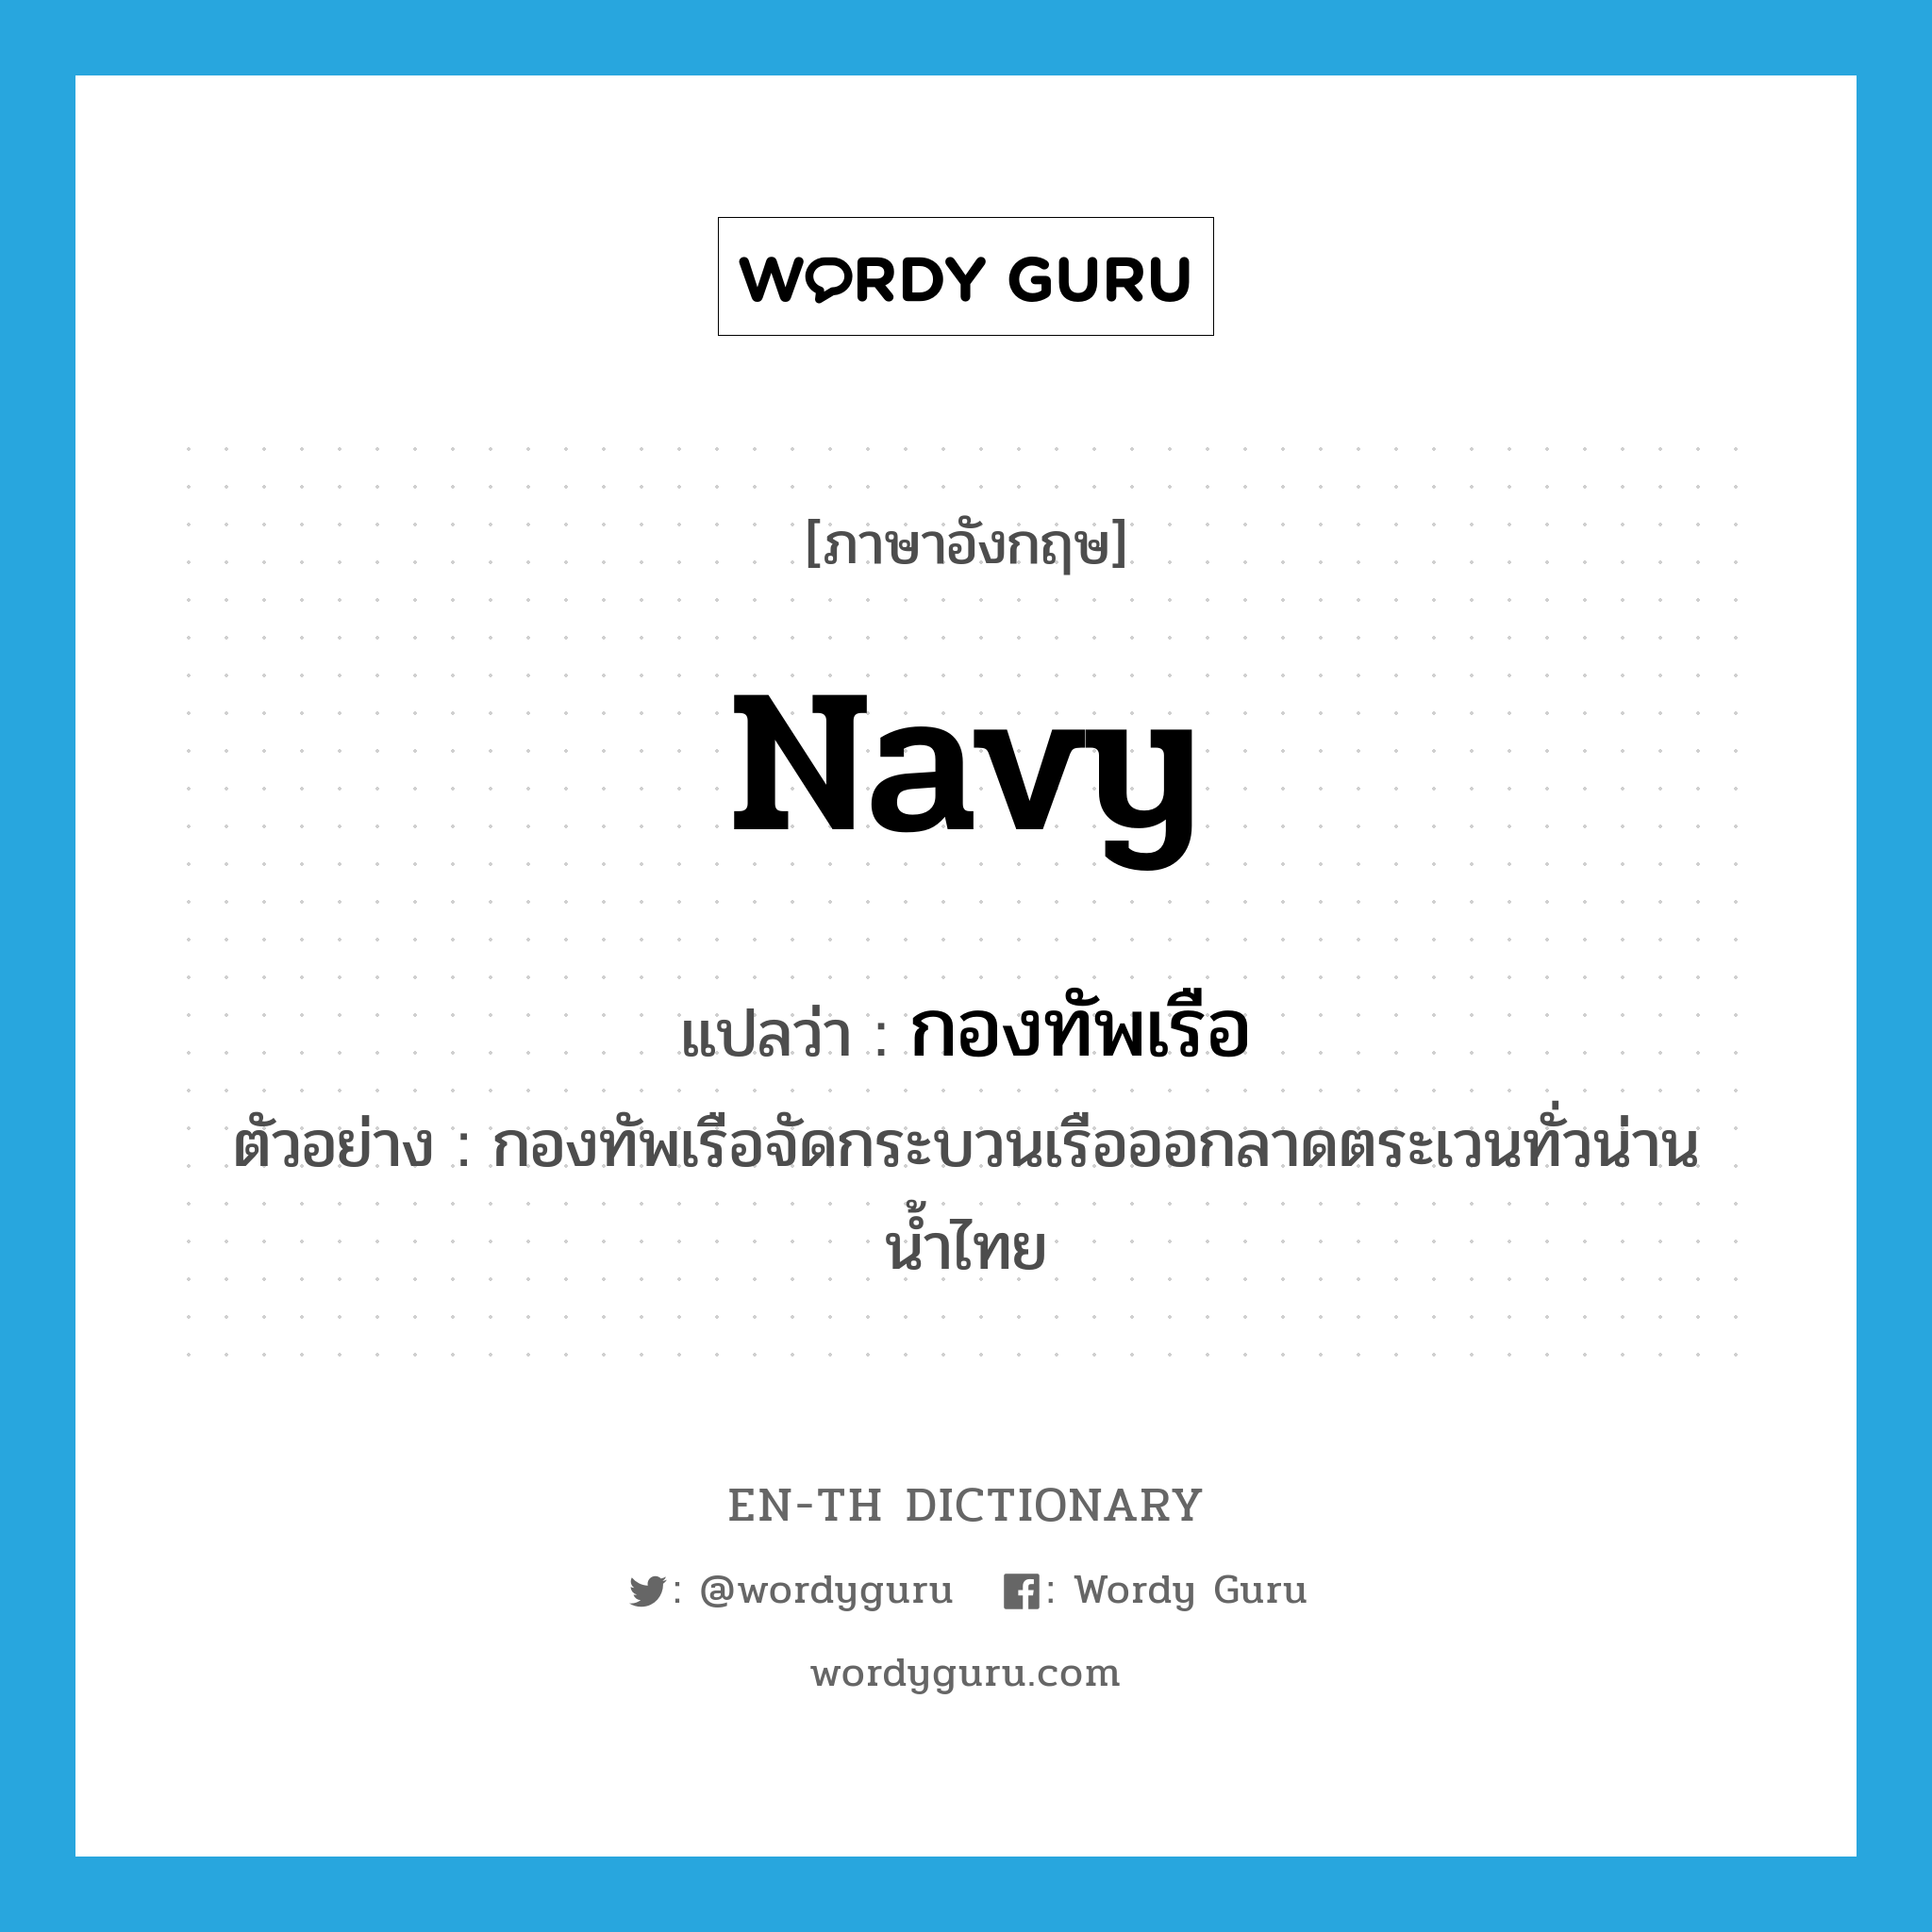 navy แปลว่า?, คำศัพท์ภาษาอังกฤษ navy แปลว่า กองทัพเรือ ประเภท N ตัวอย่าง กองทัพเรือจัดกระบวนเรือออกลาดตระเวนทั่วน่านน้ำไทย หมวด N